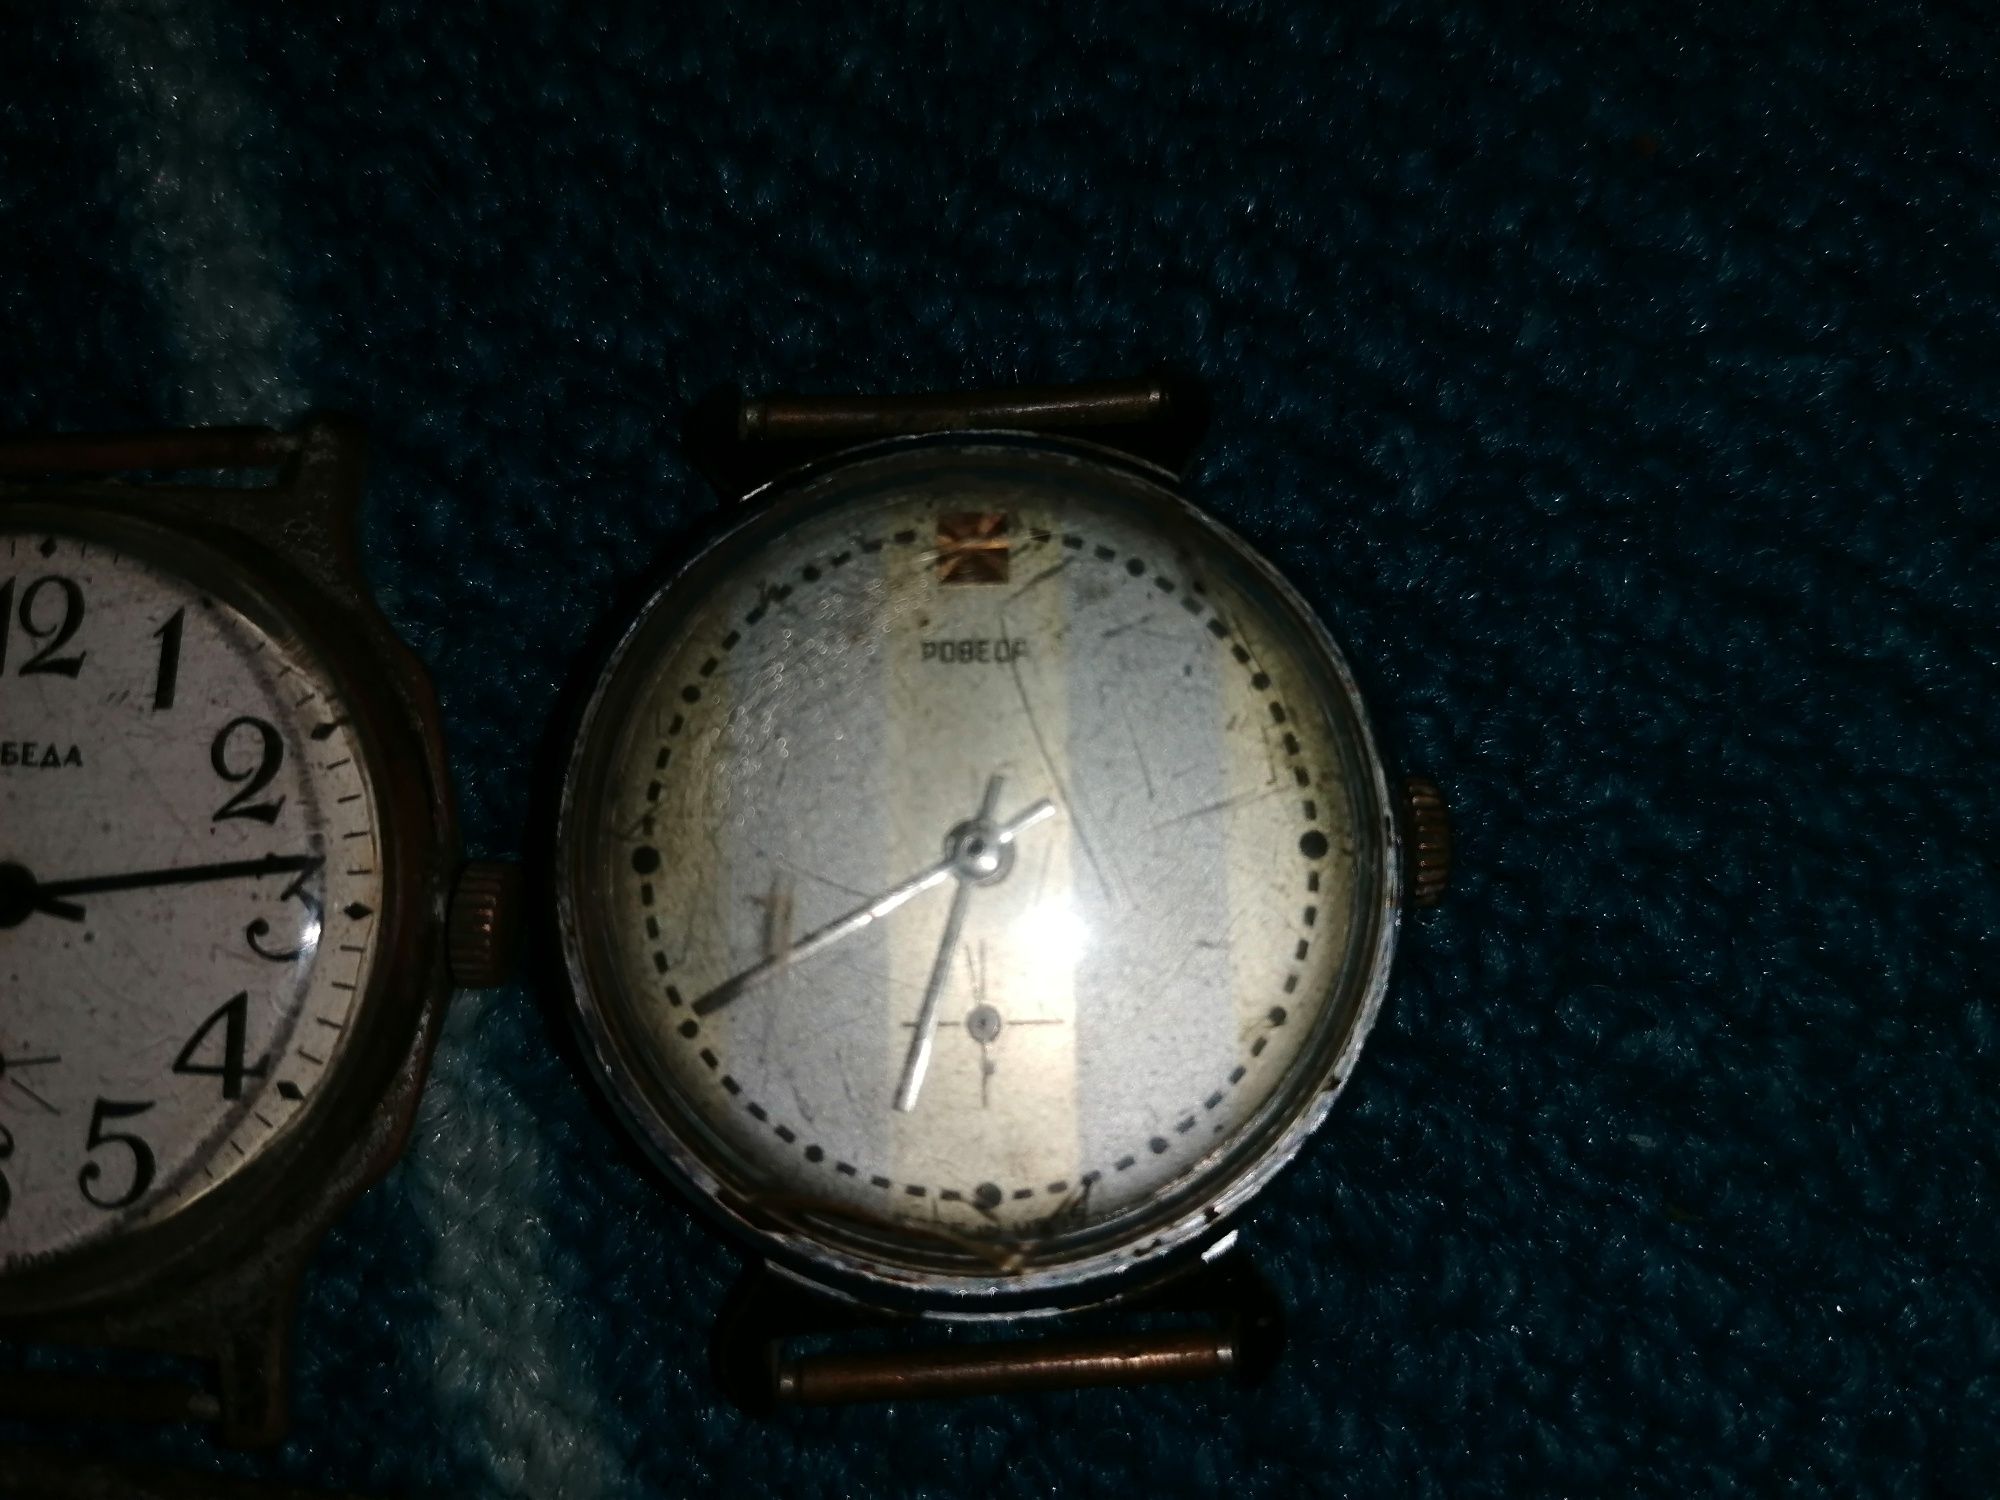 Vând o mica colecție de ceasuri vechi